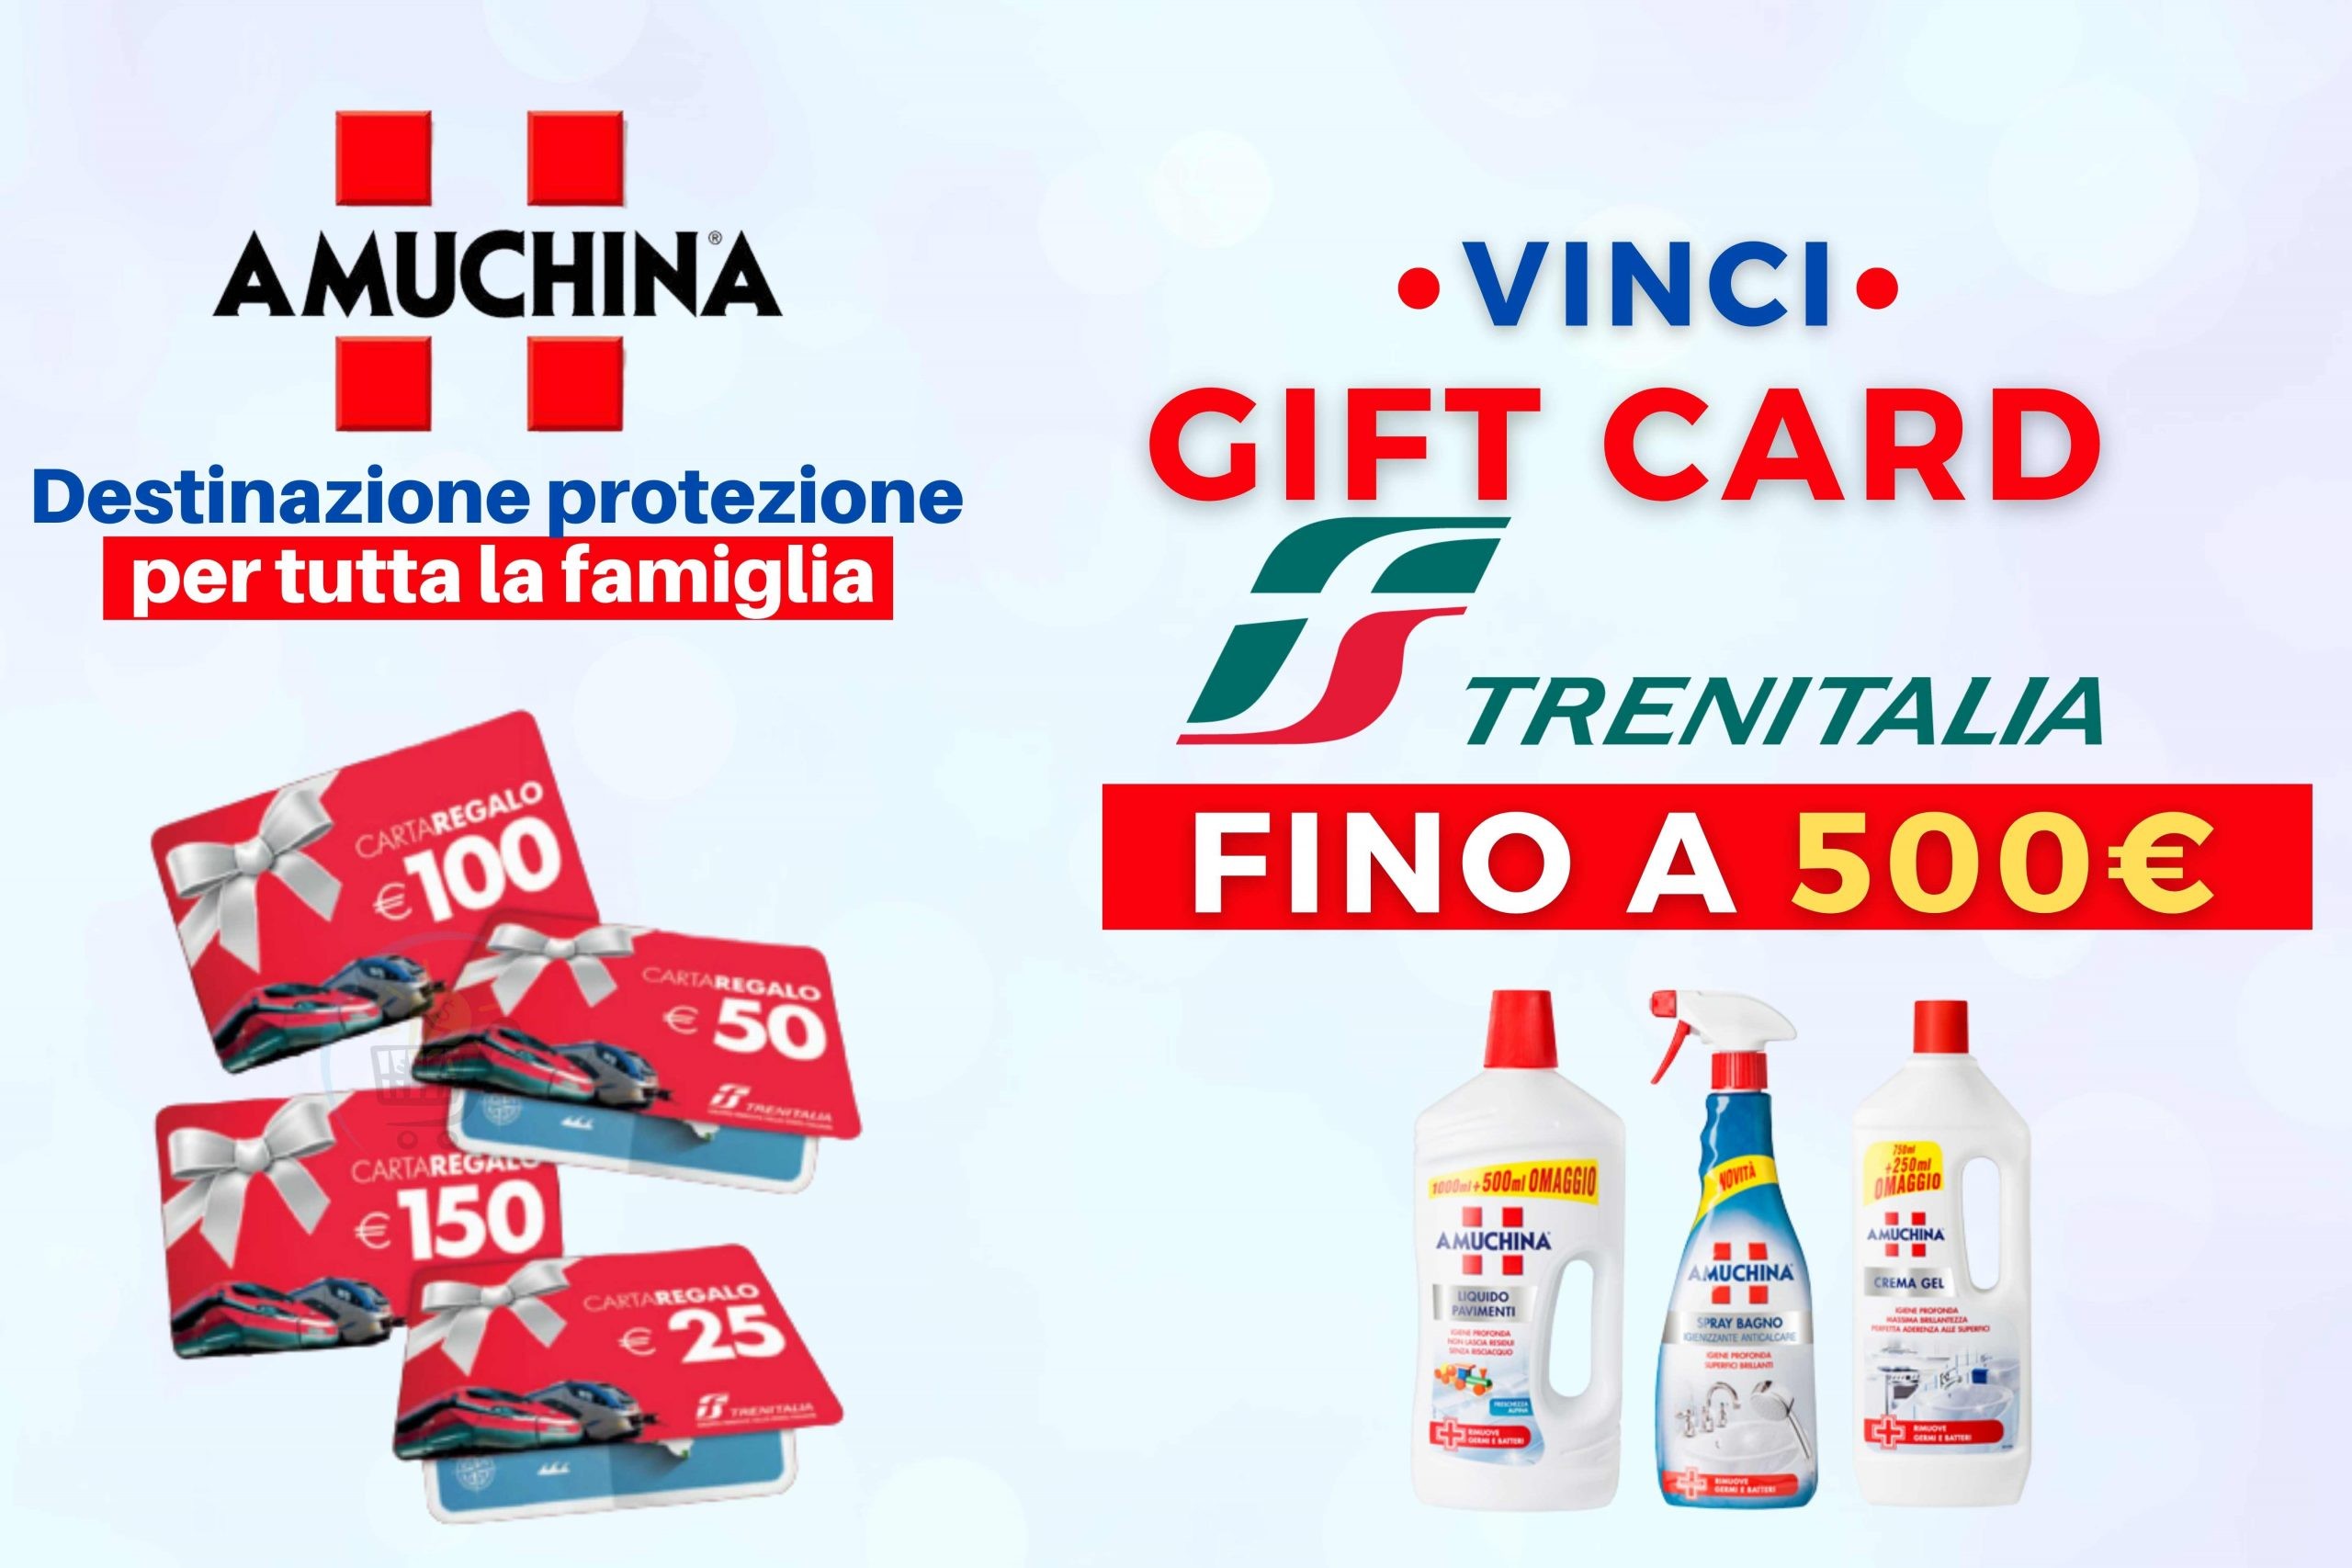 Concorso Amuchina “Destinazione protezione per tutta la famiglia”: come vincere gift card Trenitalia da 15 e 500€